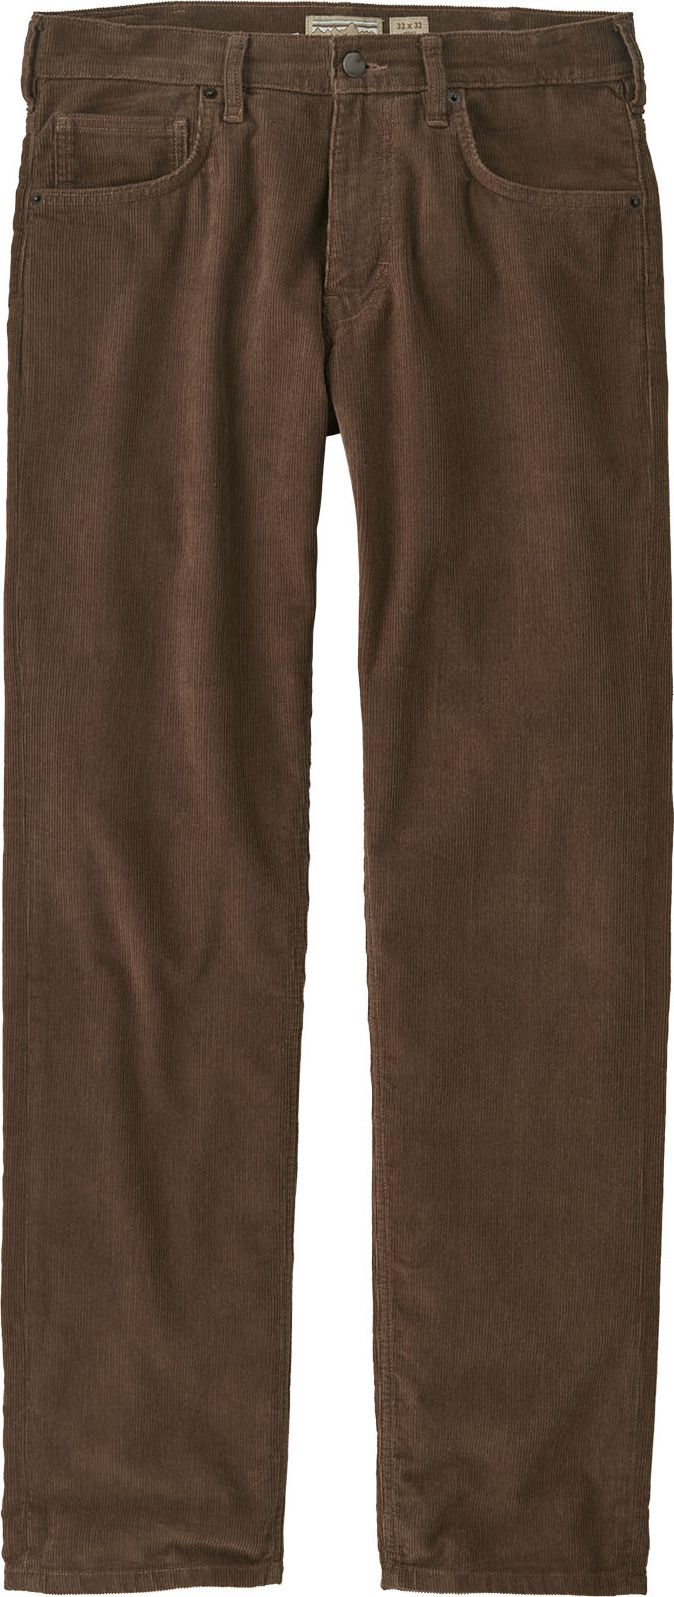 Men's Organic Cotton Corduroy Jeans - Regular Topsoil Brown Patagonia